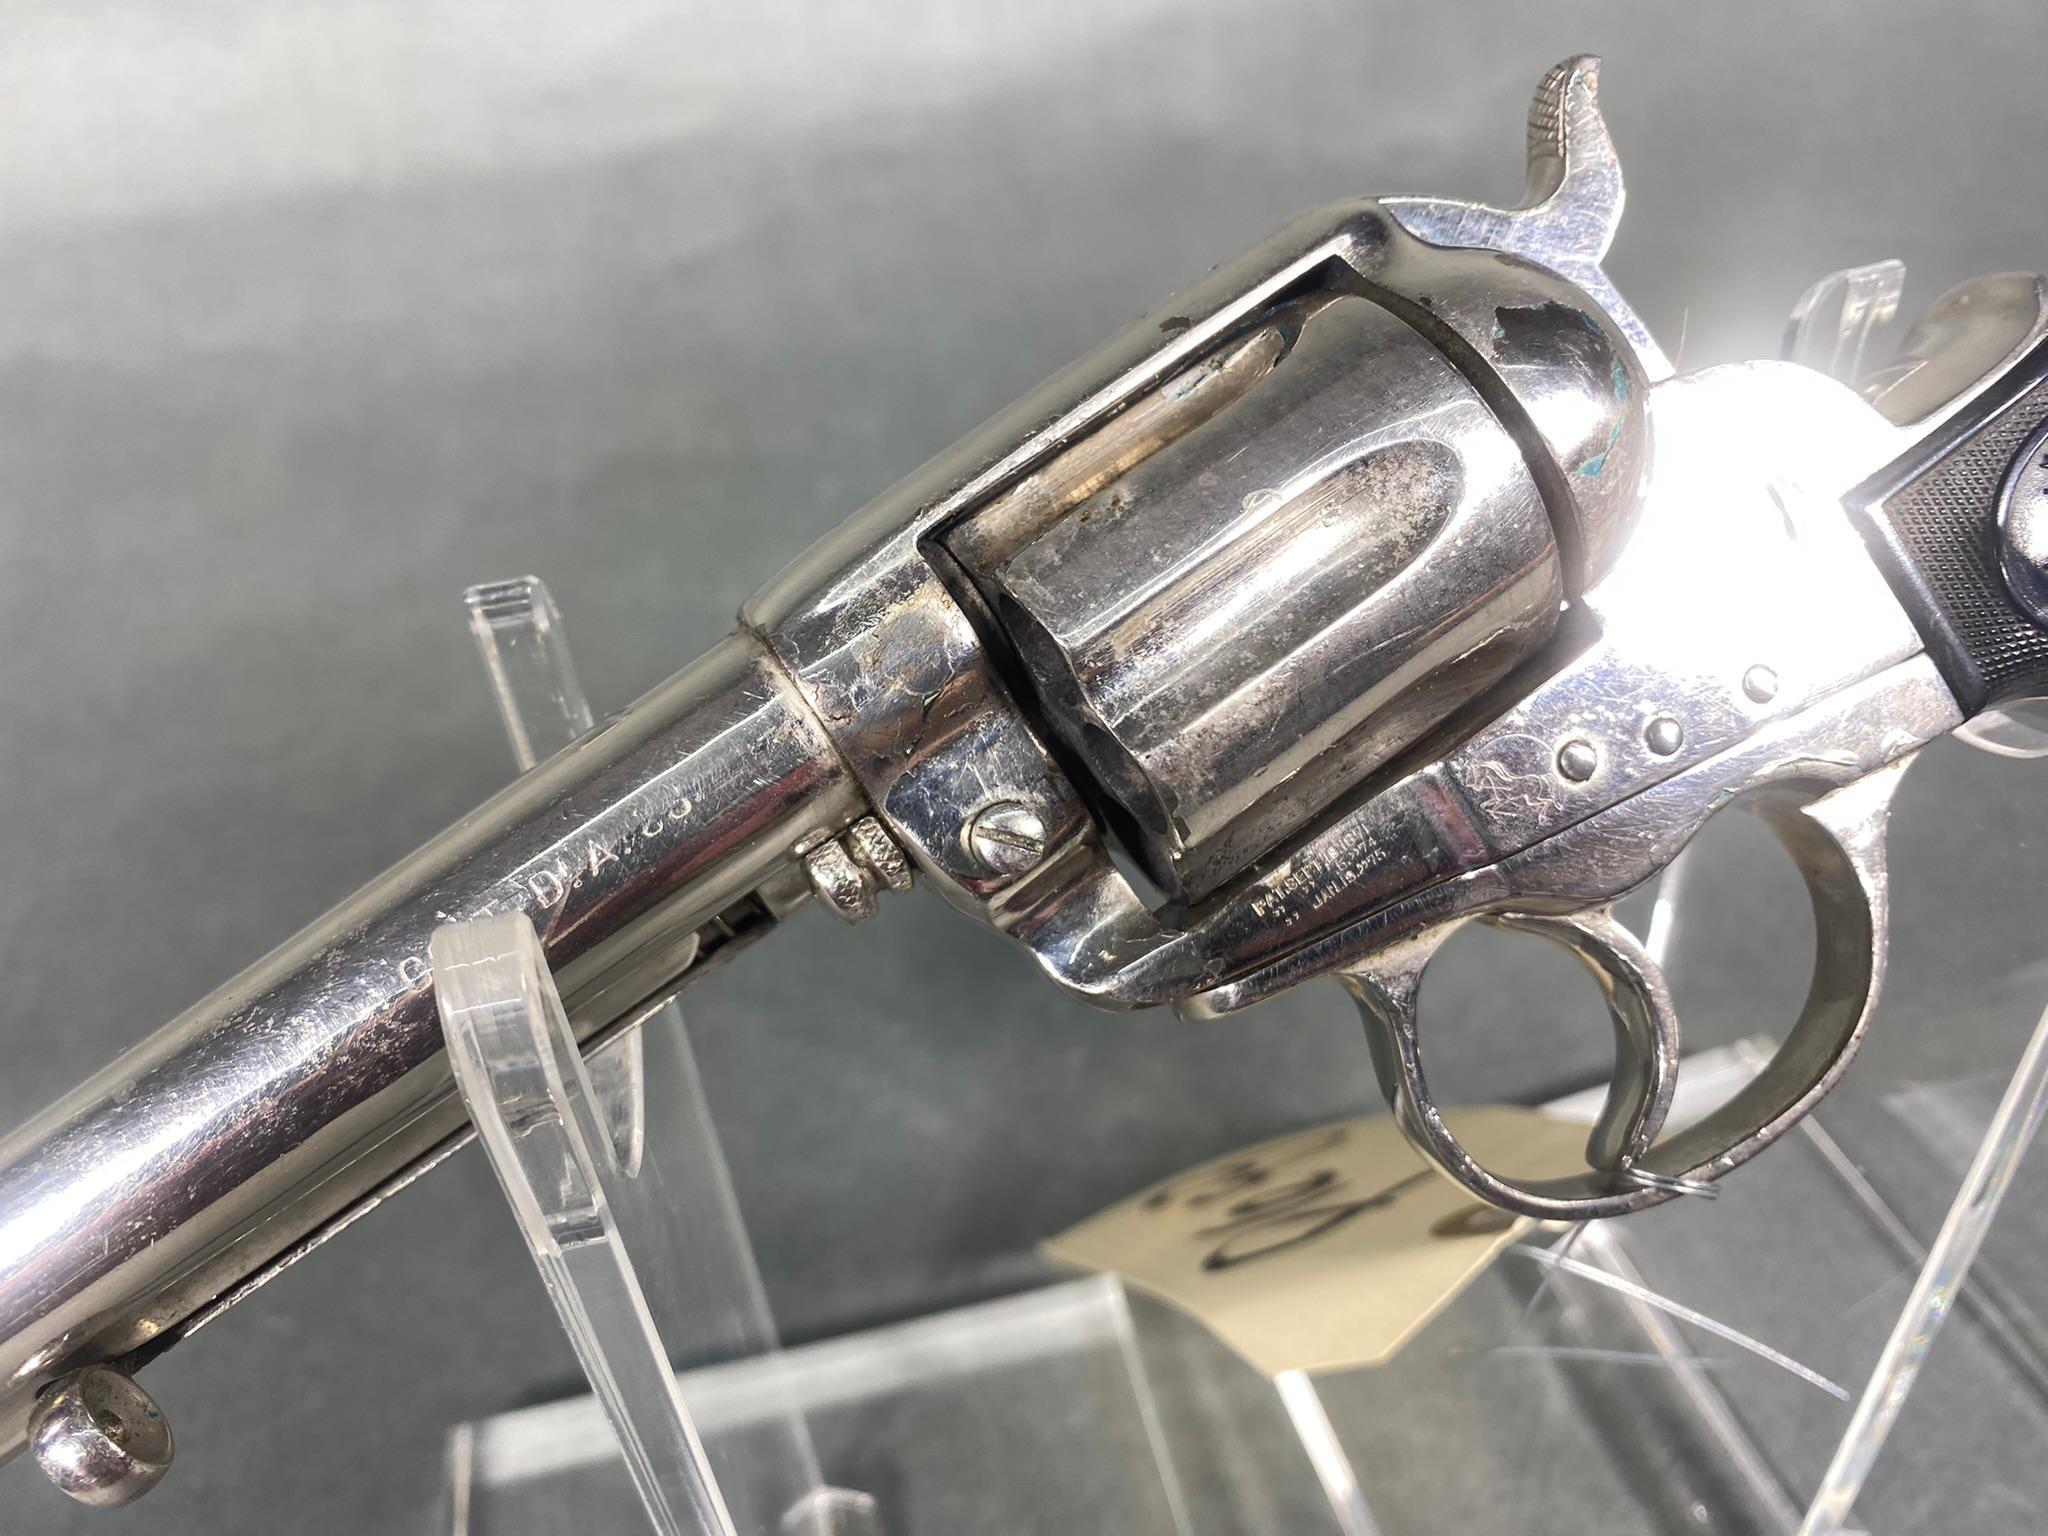 Colt Lightning Revolver Pistol 38 Cal Nickel Plate